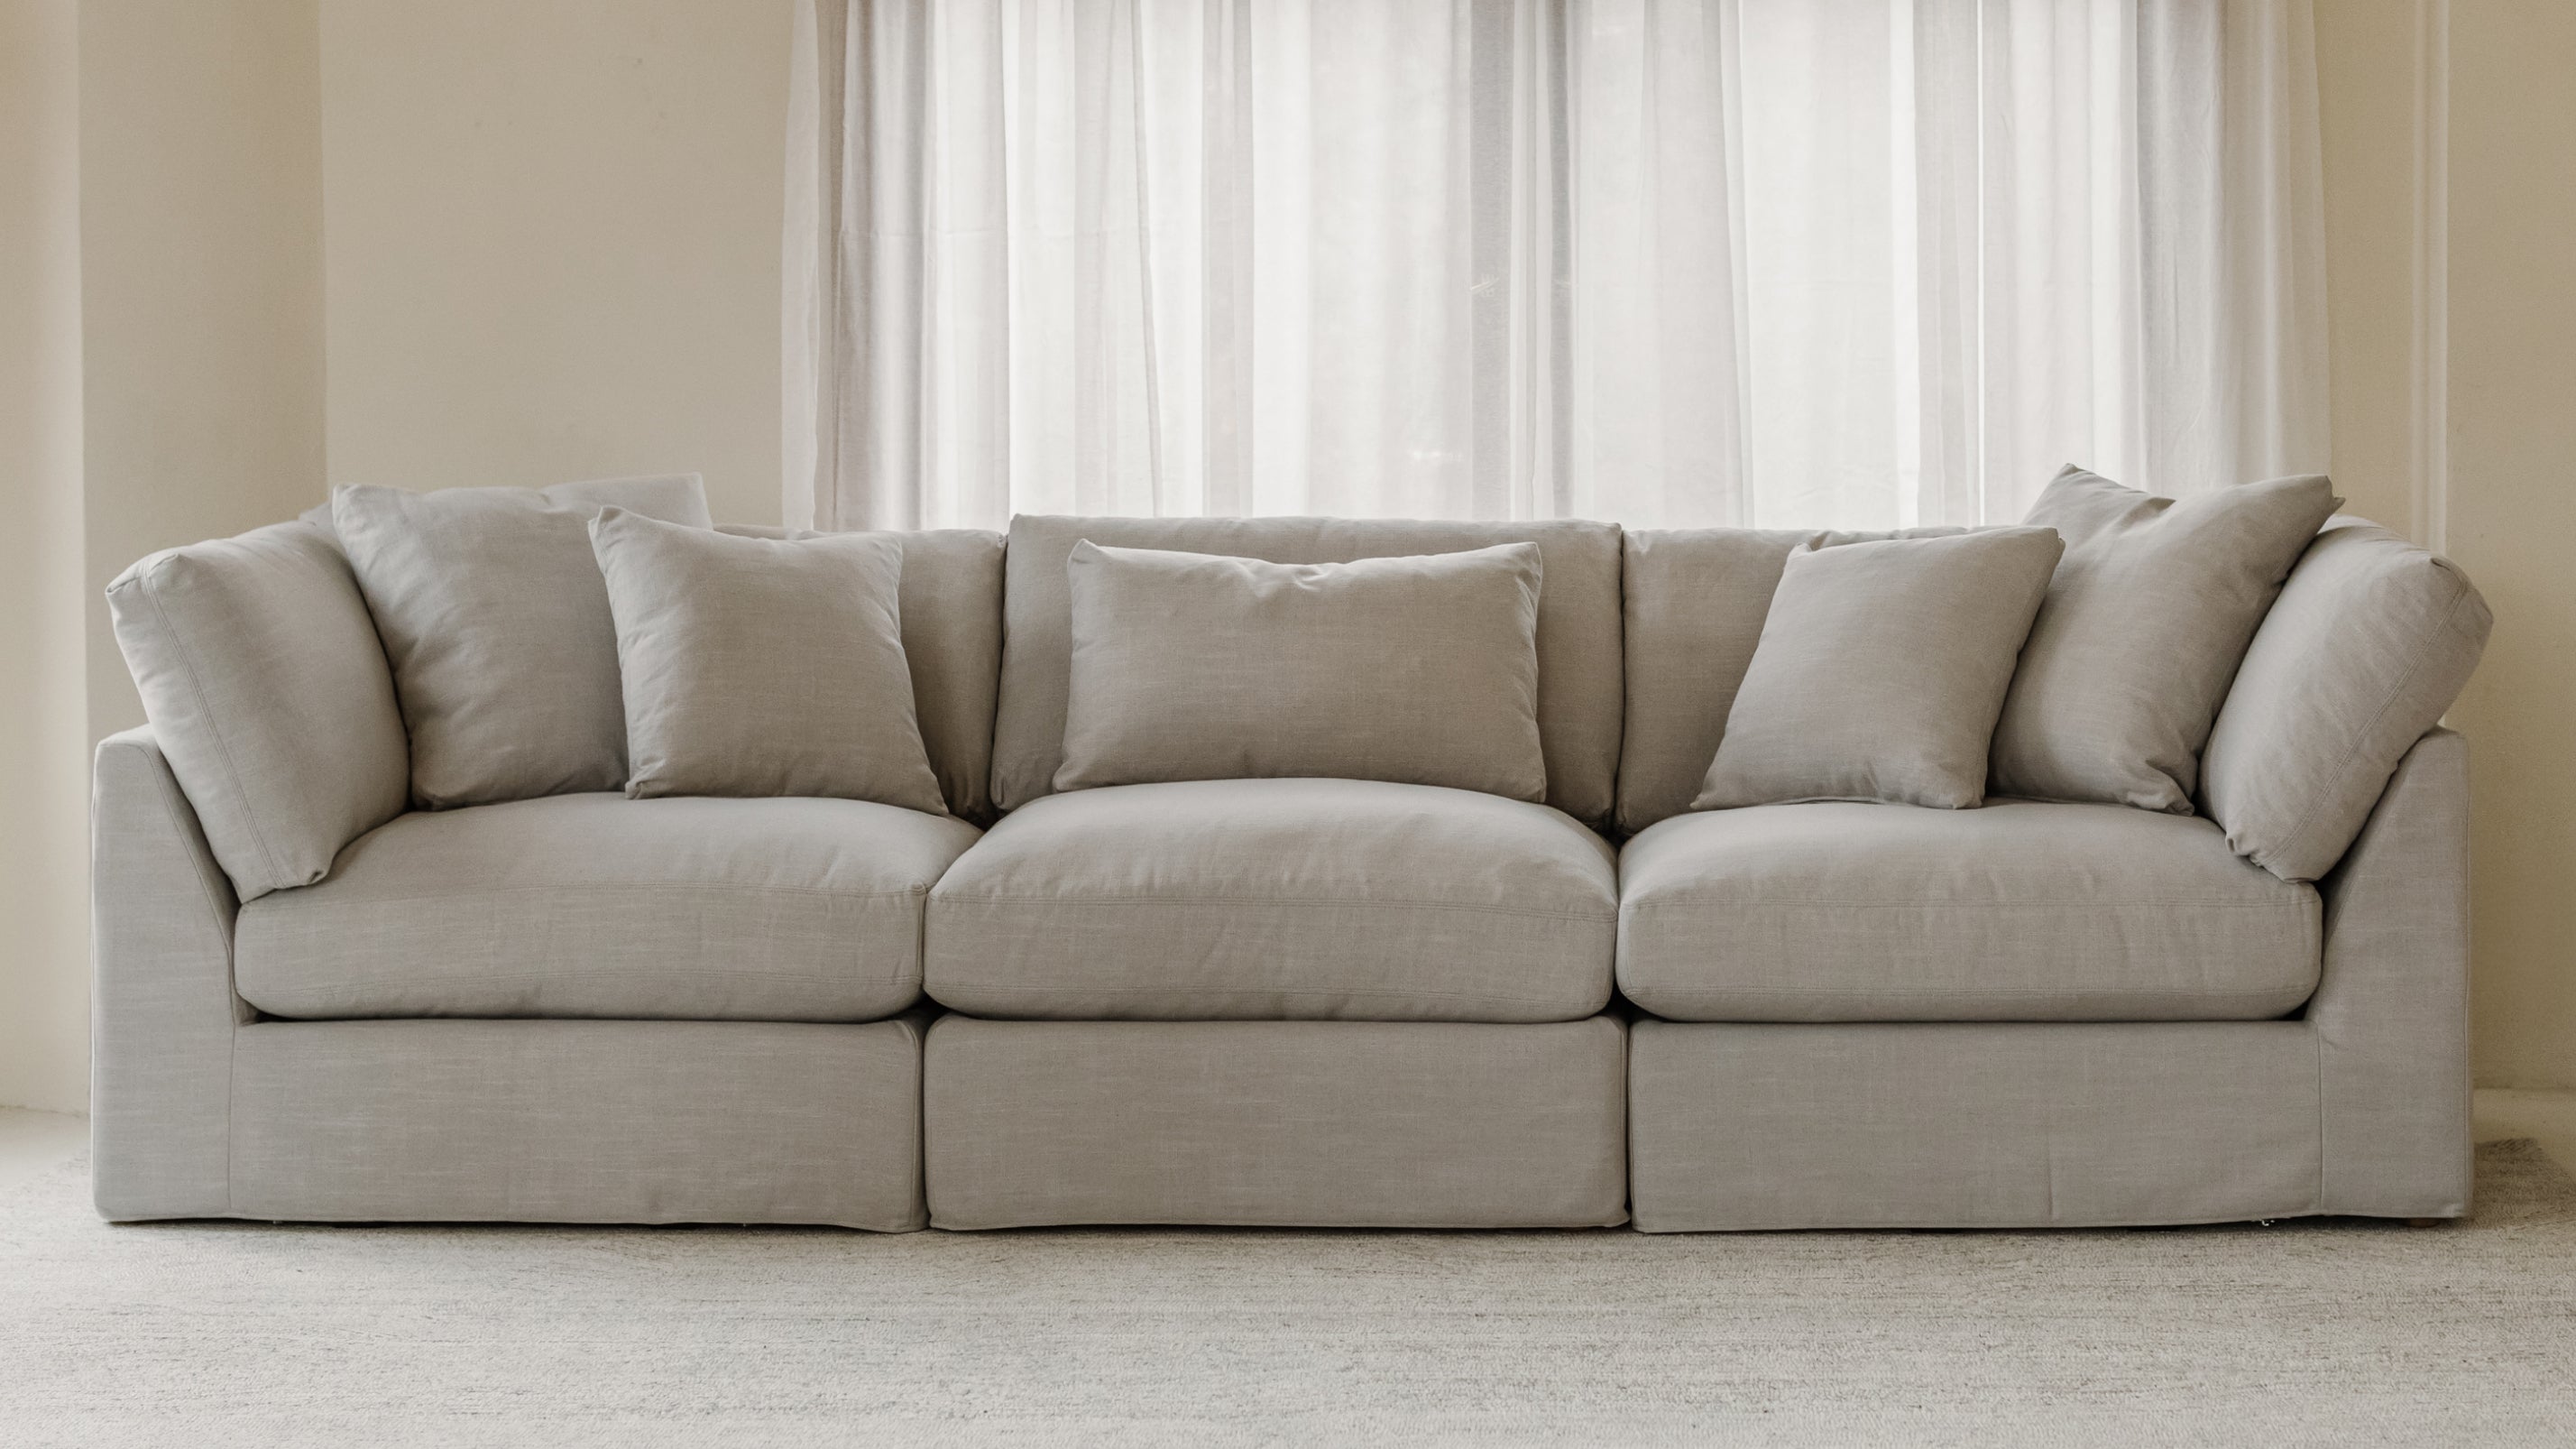 Get Together™ 3-Piece Modular Sofa, Large, Clay - Image 2